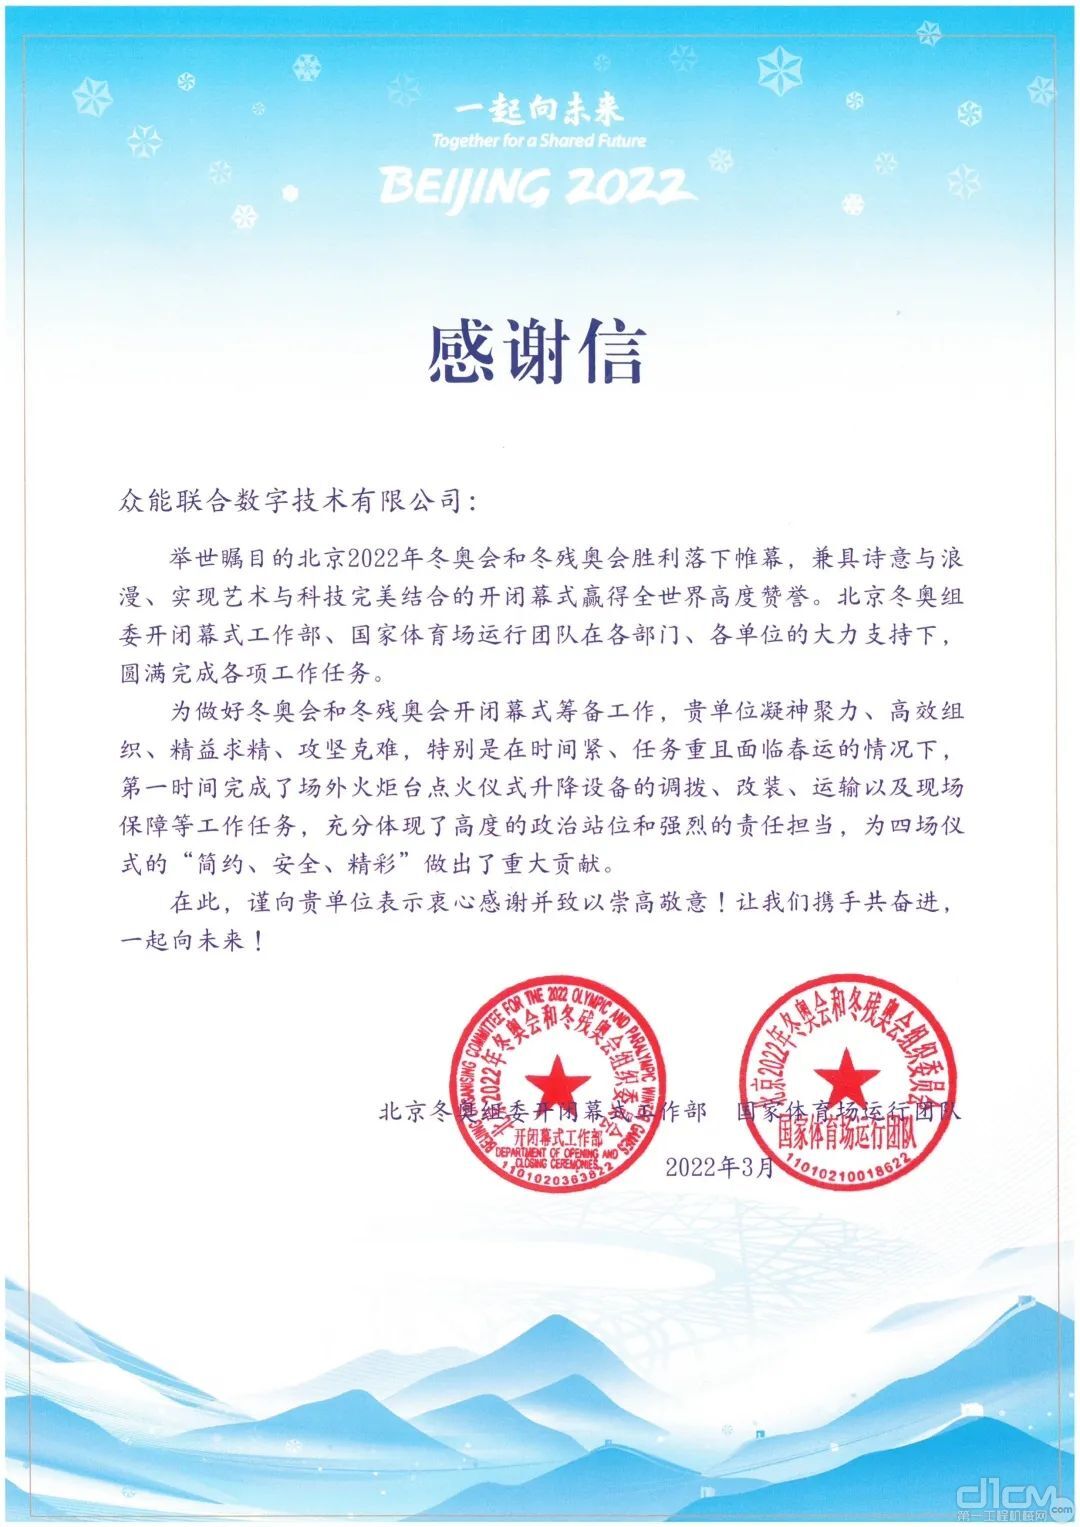 来自北京冬奥会和冬残奥会组委会的一封感谢信